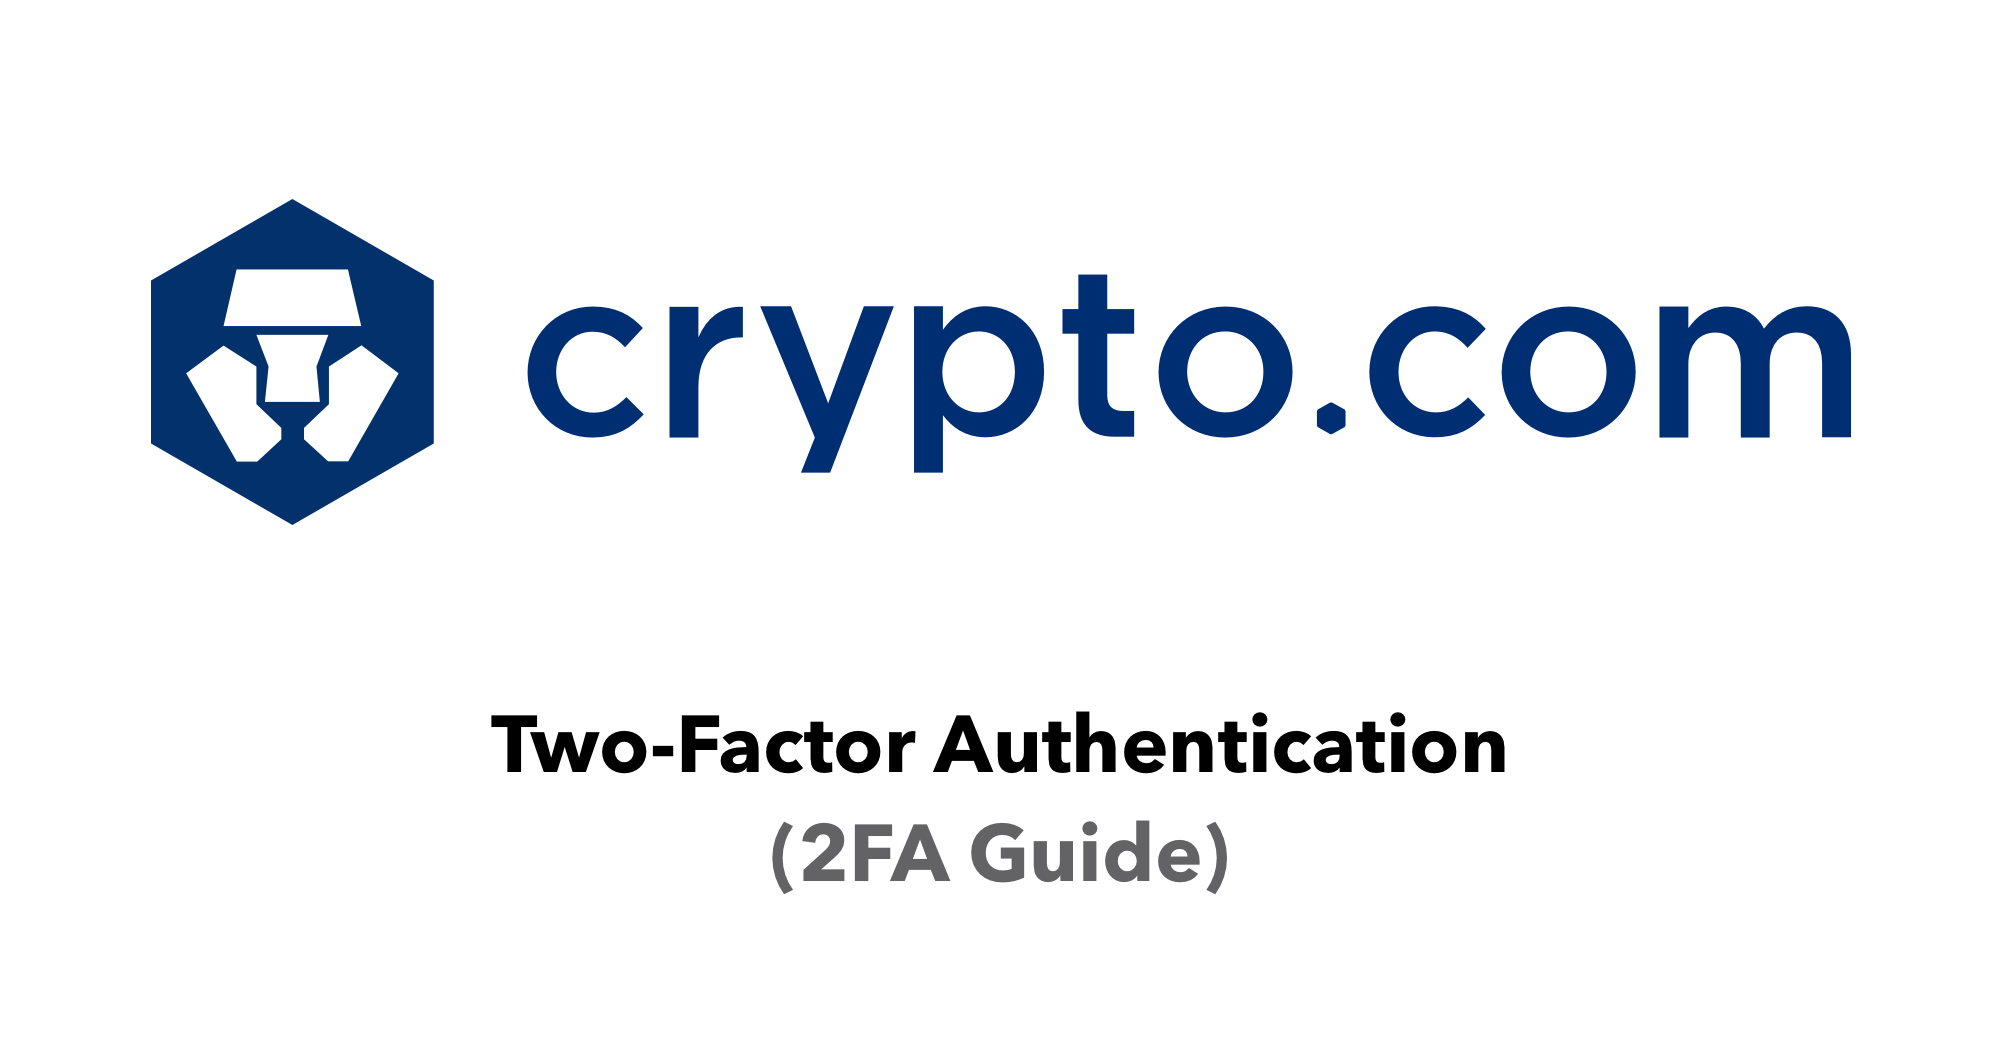 where do i find my 2fa code for crypto.com